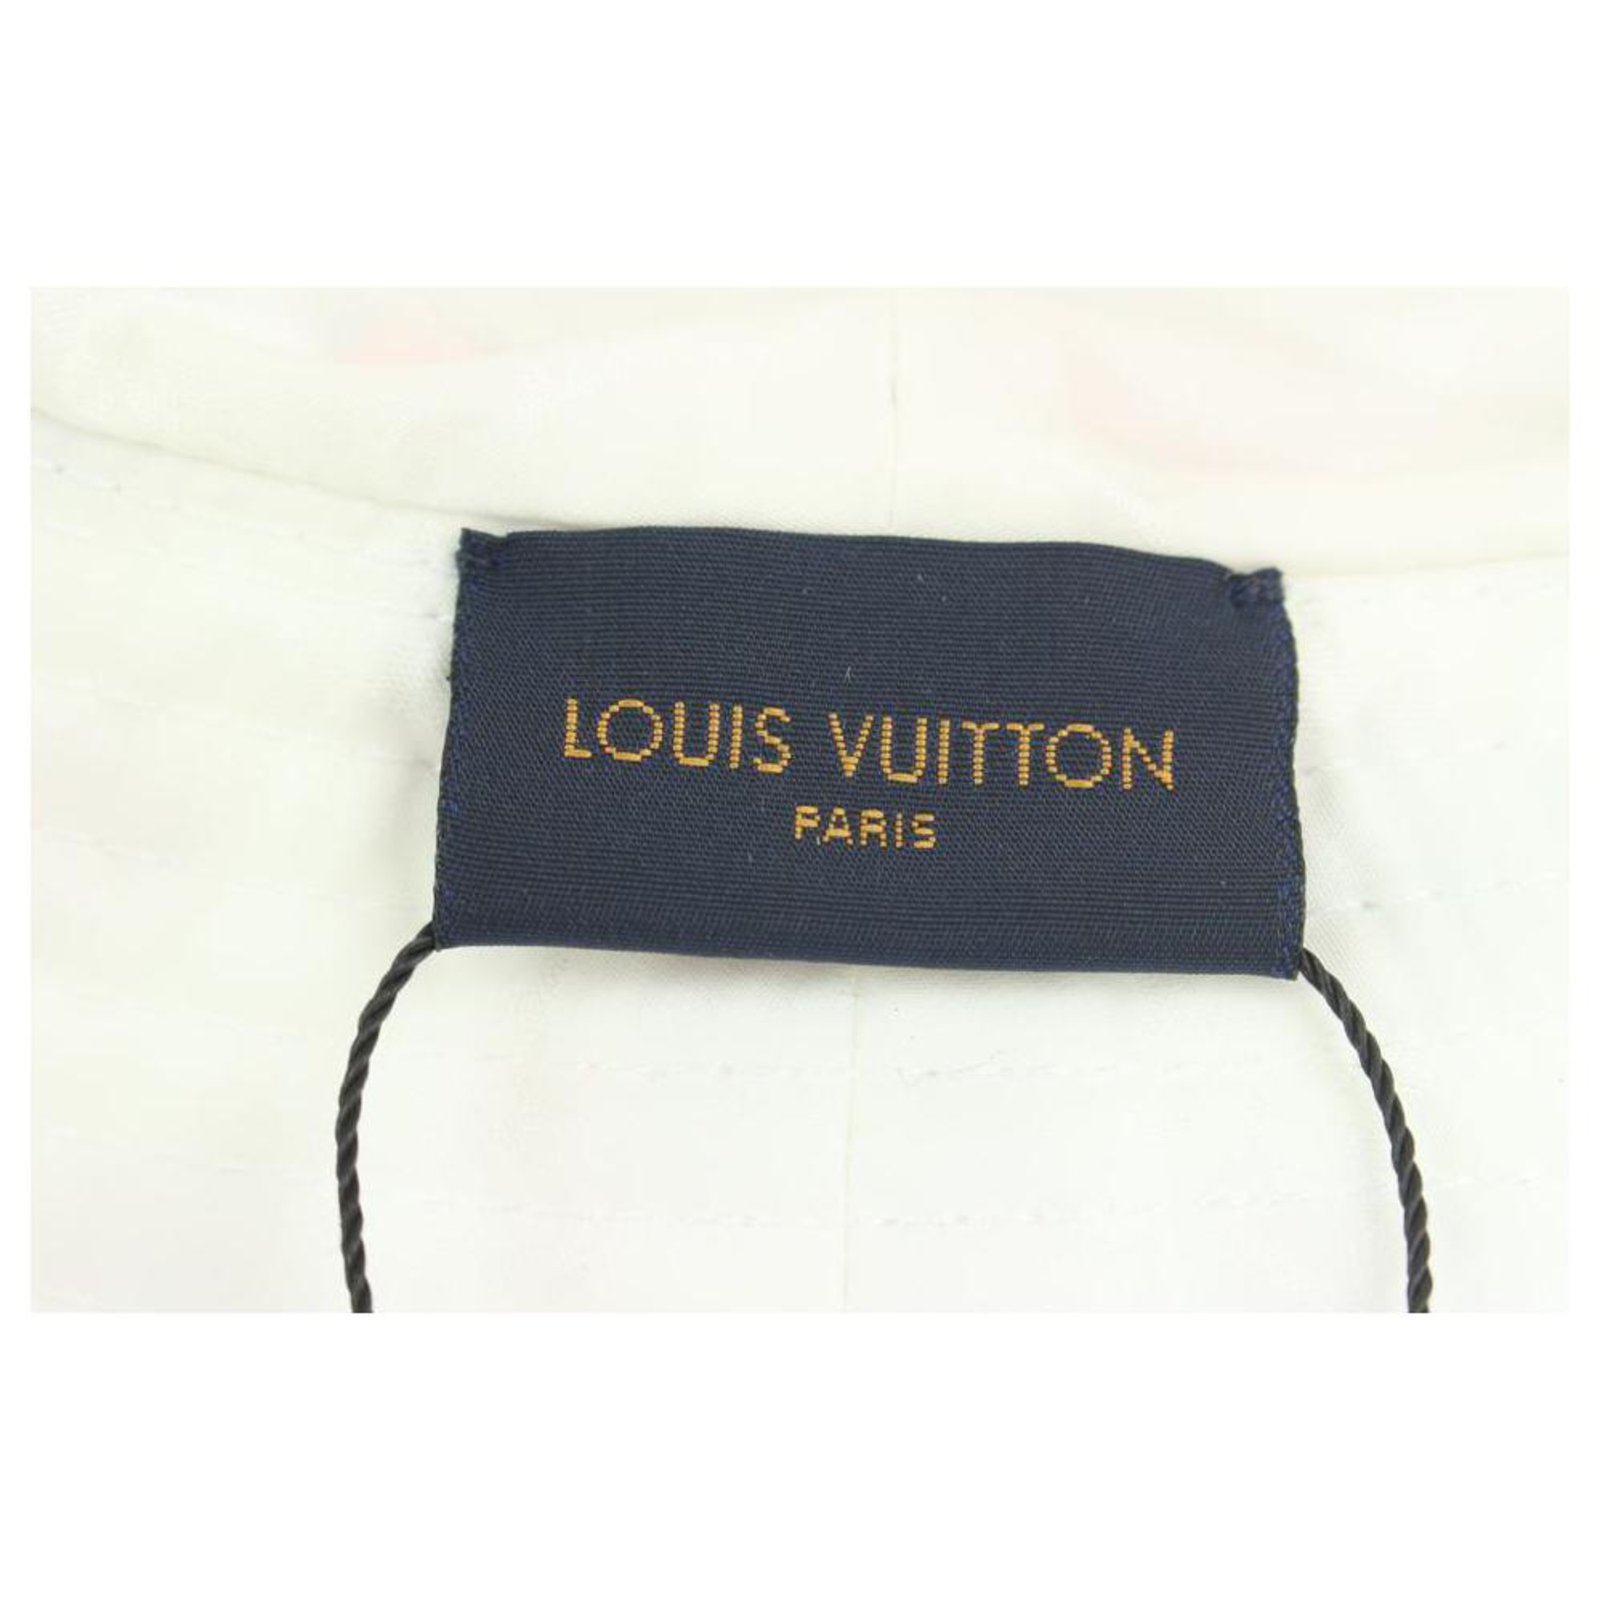 Louis Vuitton Crochet Bucket Hat for Sale in Windsor Hills, CA - OfferUp